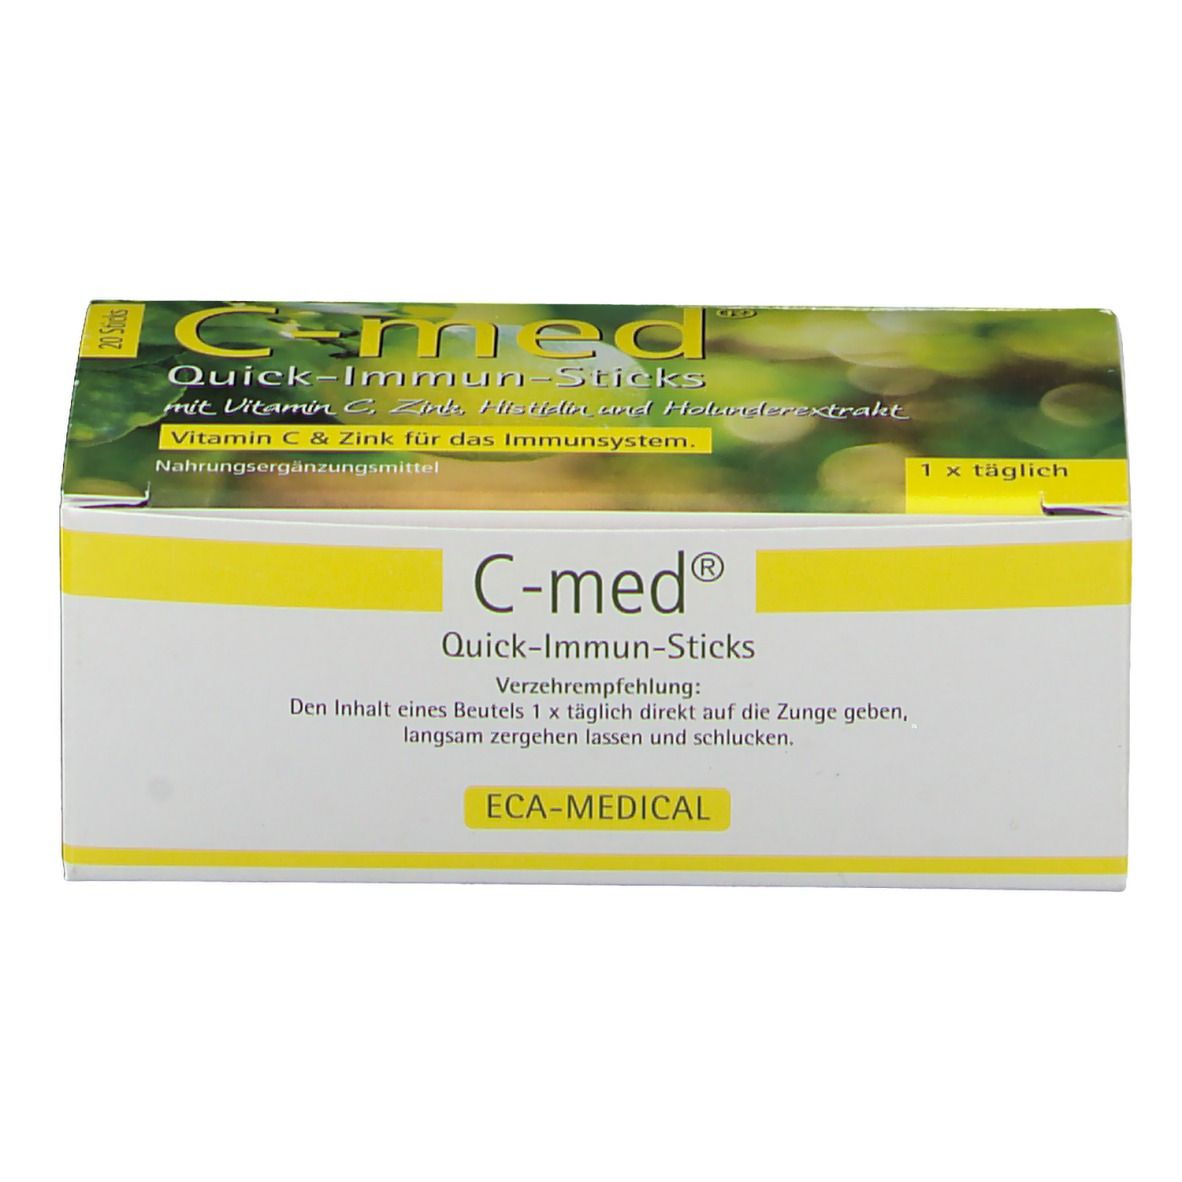 C-MED Quick-Immun-Sticks